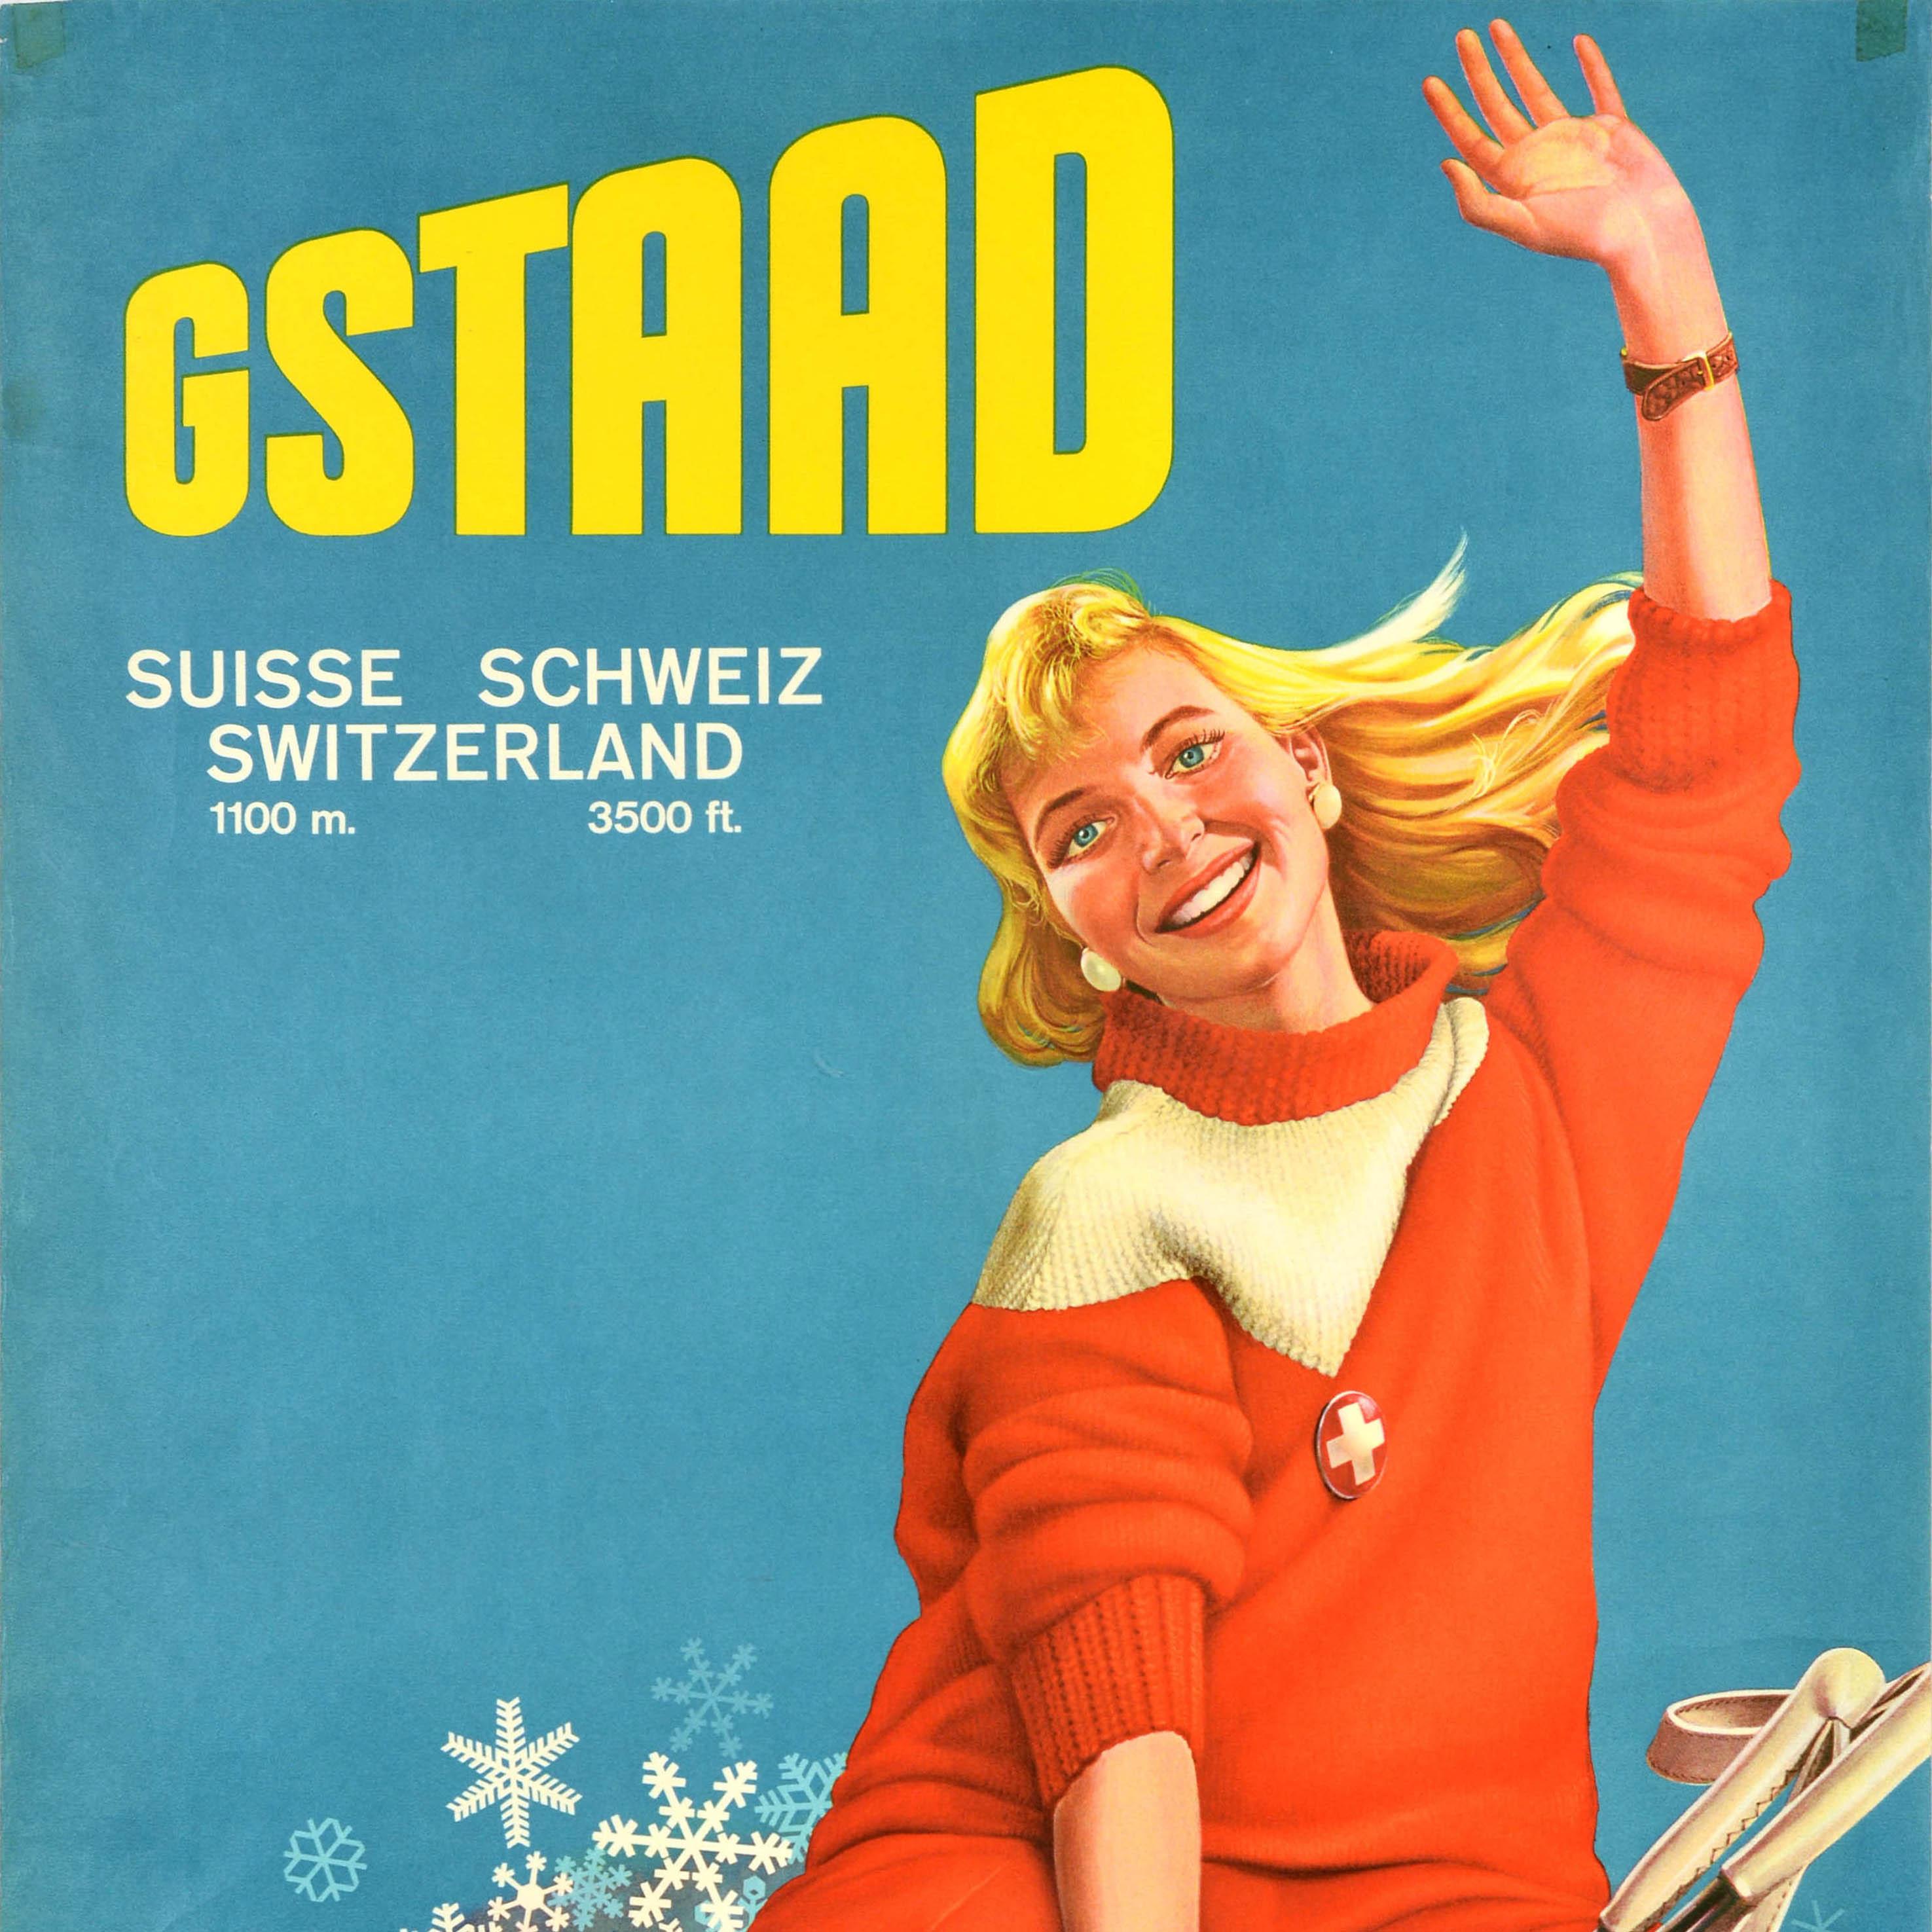 Affiche originale de voyage et de ski pour Gstaad Suisse Schweiz 1100m 3500ft représentant une dame souriante assise sur un nuage de flocons de neige, tenant ses bâtons de ski d'une main et saluant le spectateur de l'autre, le drapeau suisse d'une